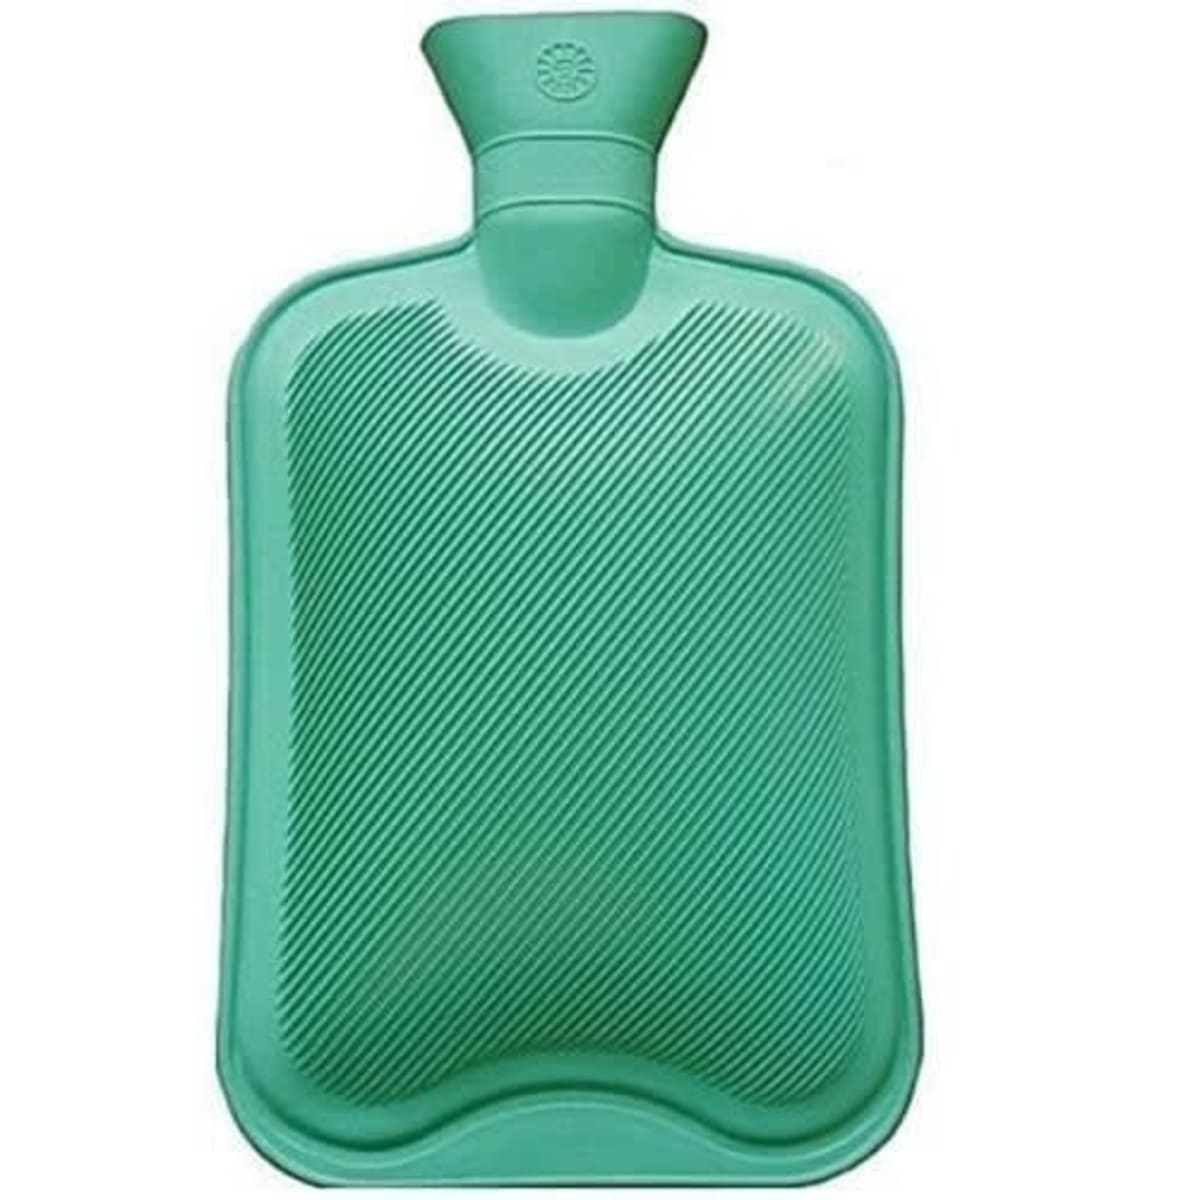 Hot Water Bottle - Flexible Rubber